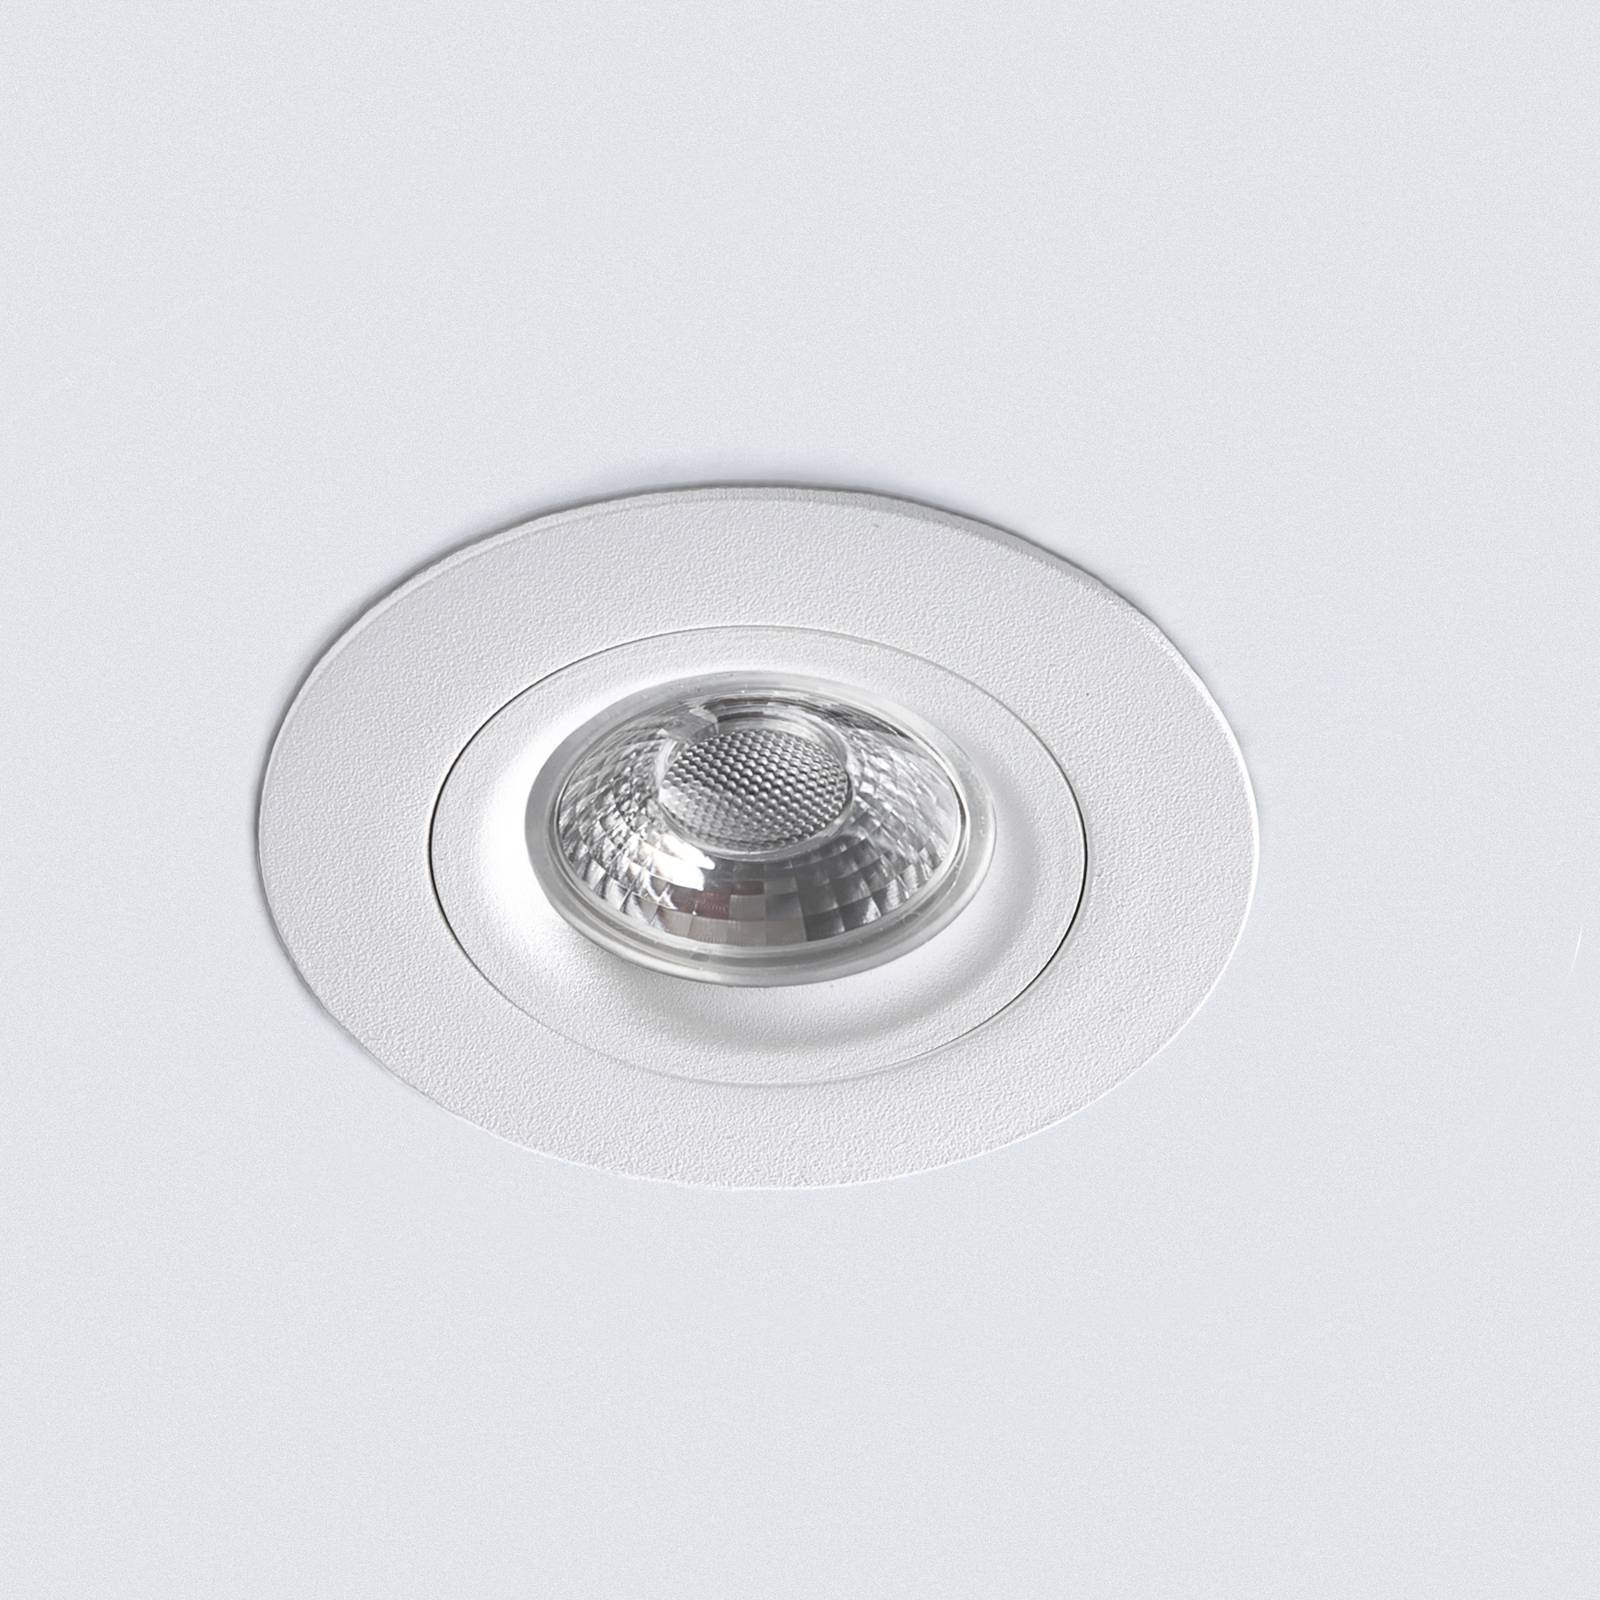 DL6809 LED downlight, round, white